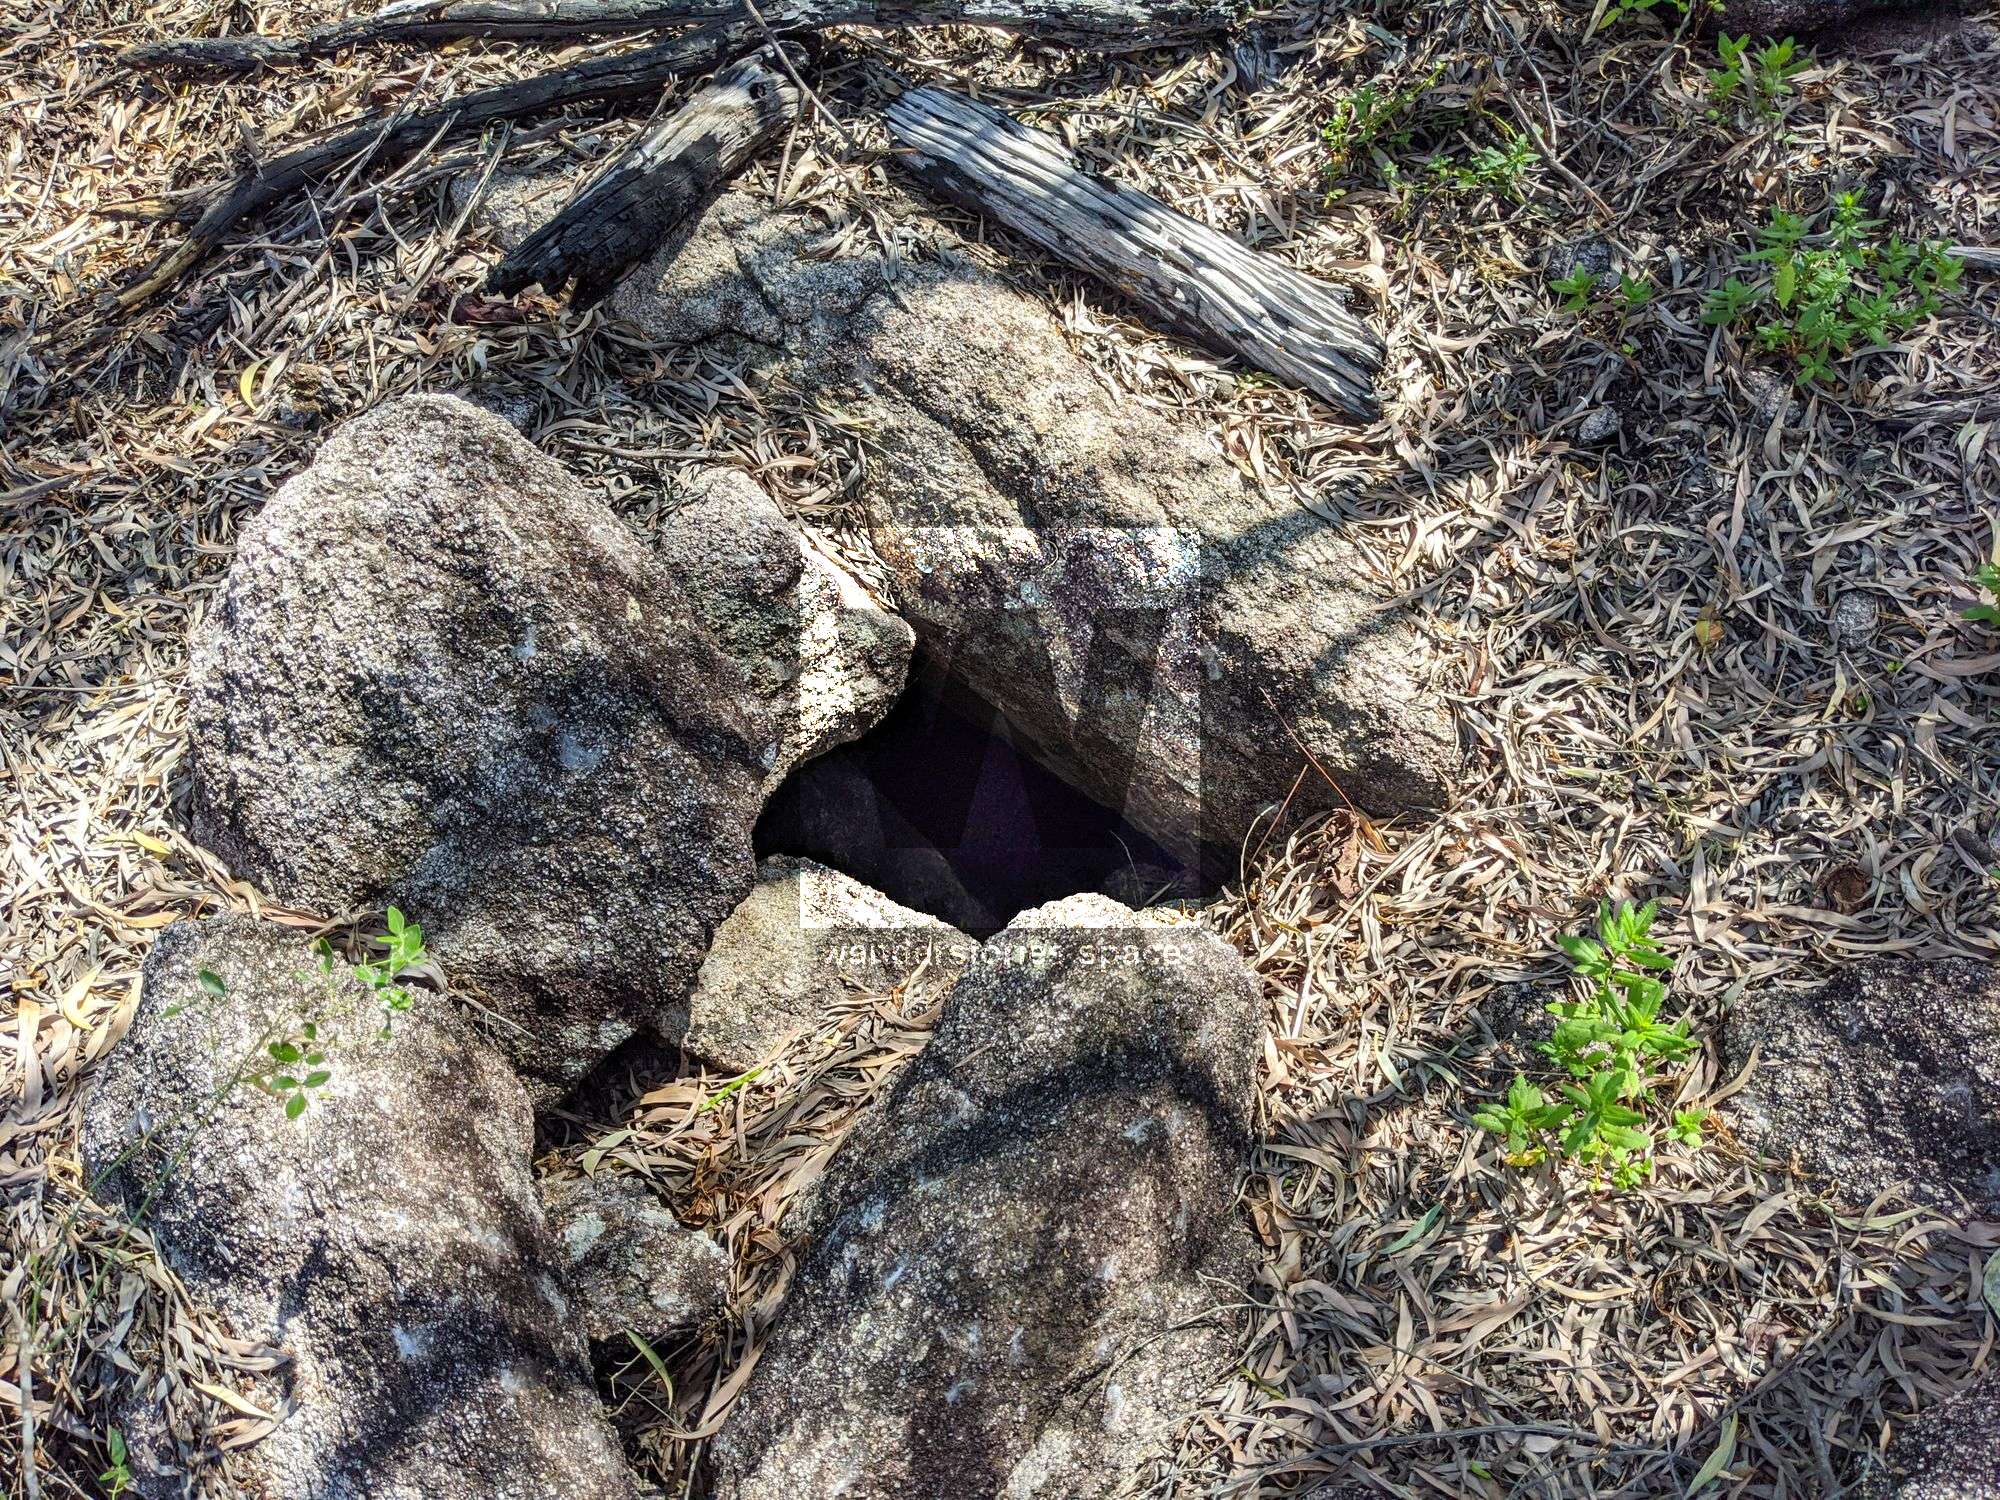 Mt Burrumbush Feltham Cone hole